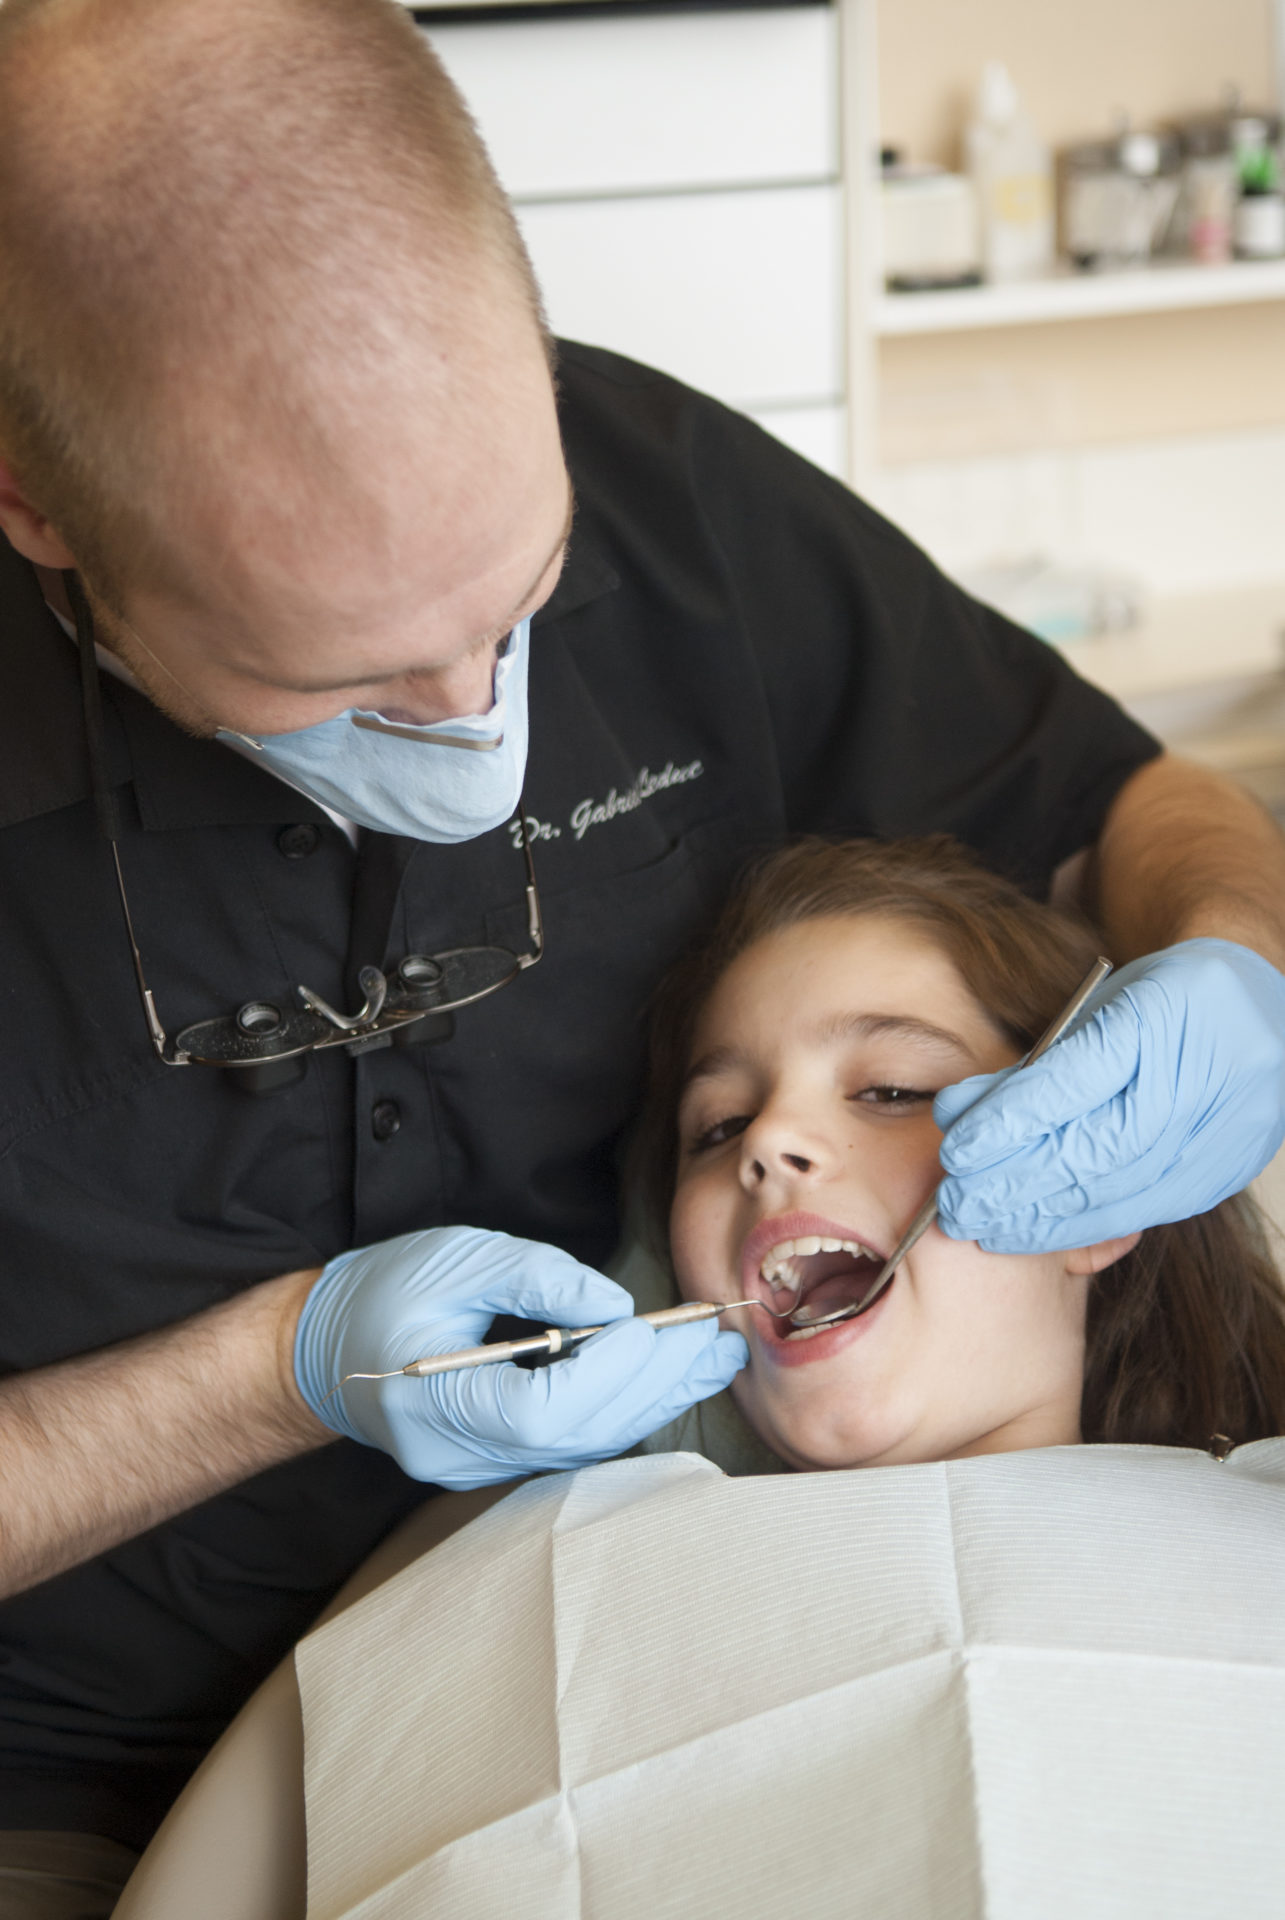 Les restaurations (plombages) - Clinique Dentaire Dr. Gabriel Leduc de  Saint-Eustache